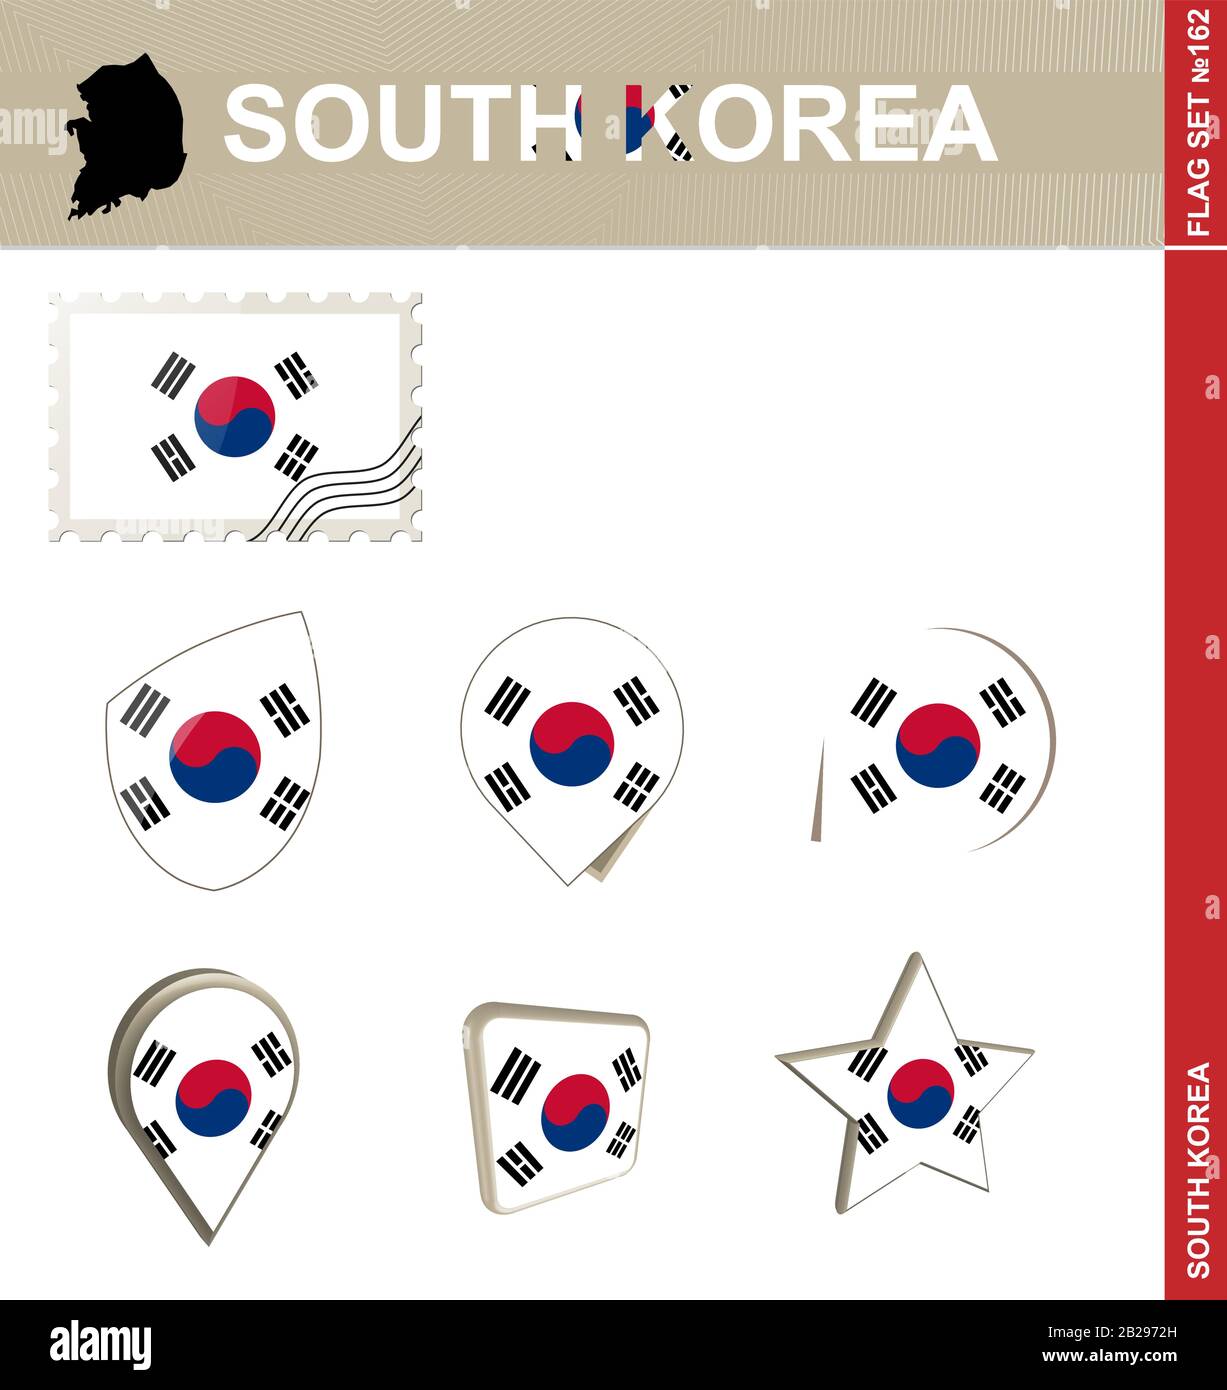 Ensemble De Drapeaux De Corée Du Sud, Ensemble De Drapeaux #162. Vecteur. Illustration de Vecteur